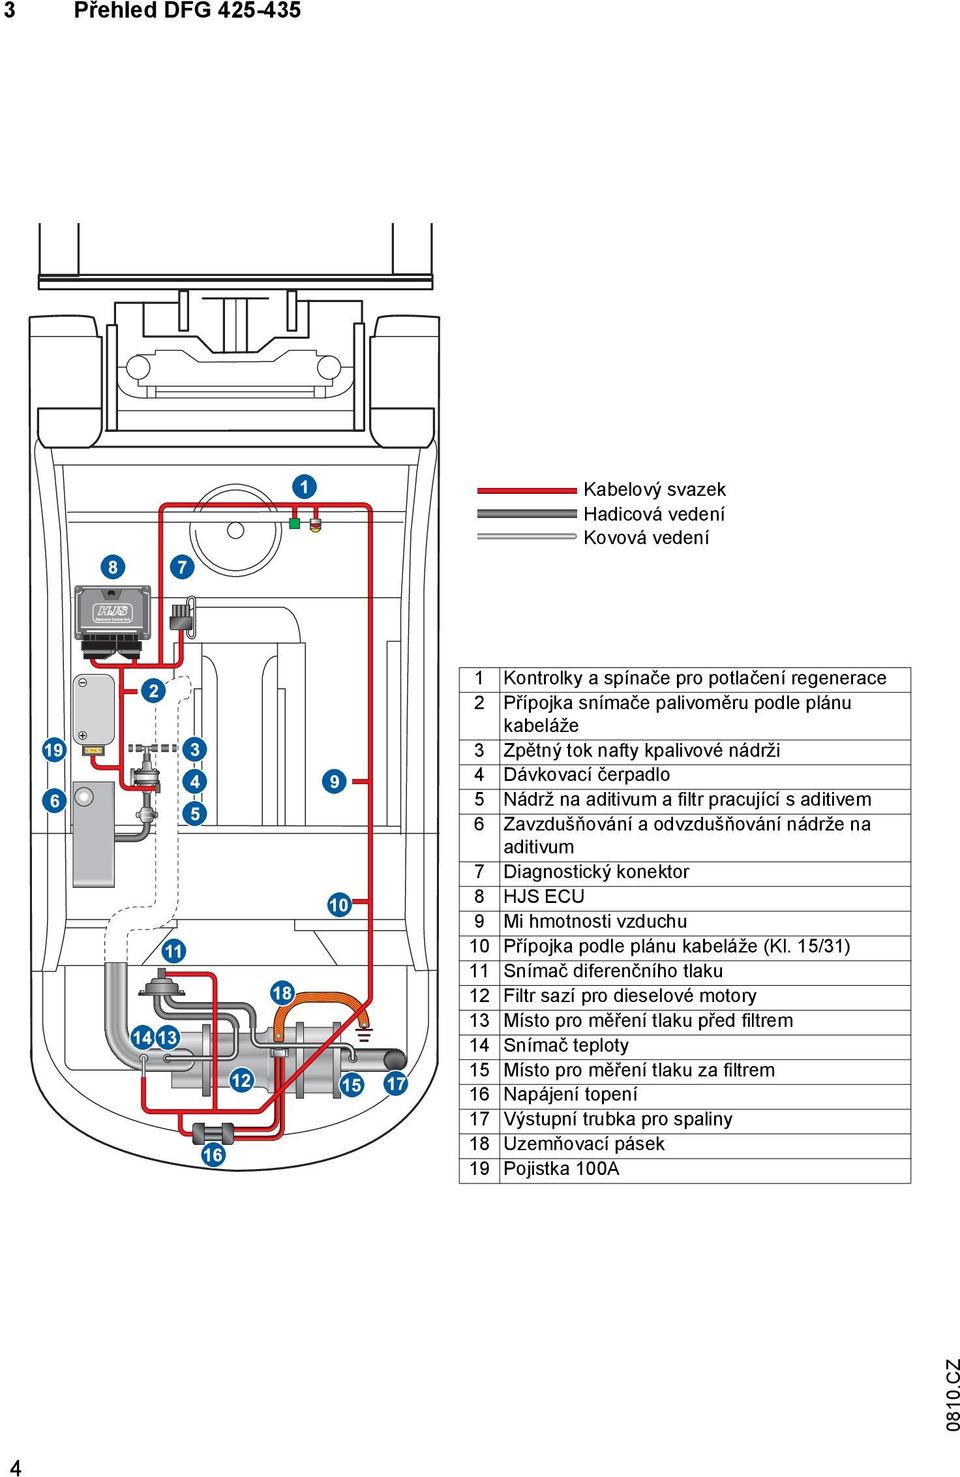 Diagnostický konektor 8 HJS ECU 9 i hmotnosti vzduchu 10 Přípojka podle plánu kabeláže (Kl.